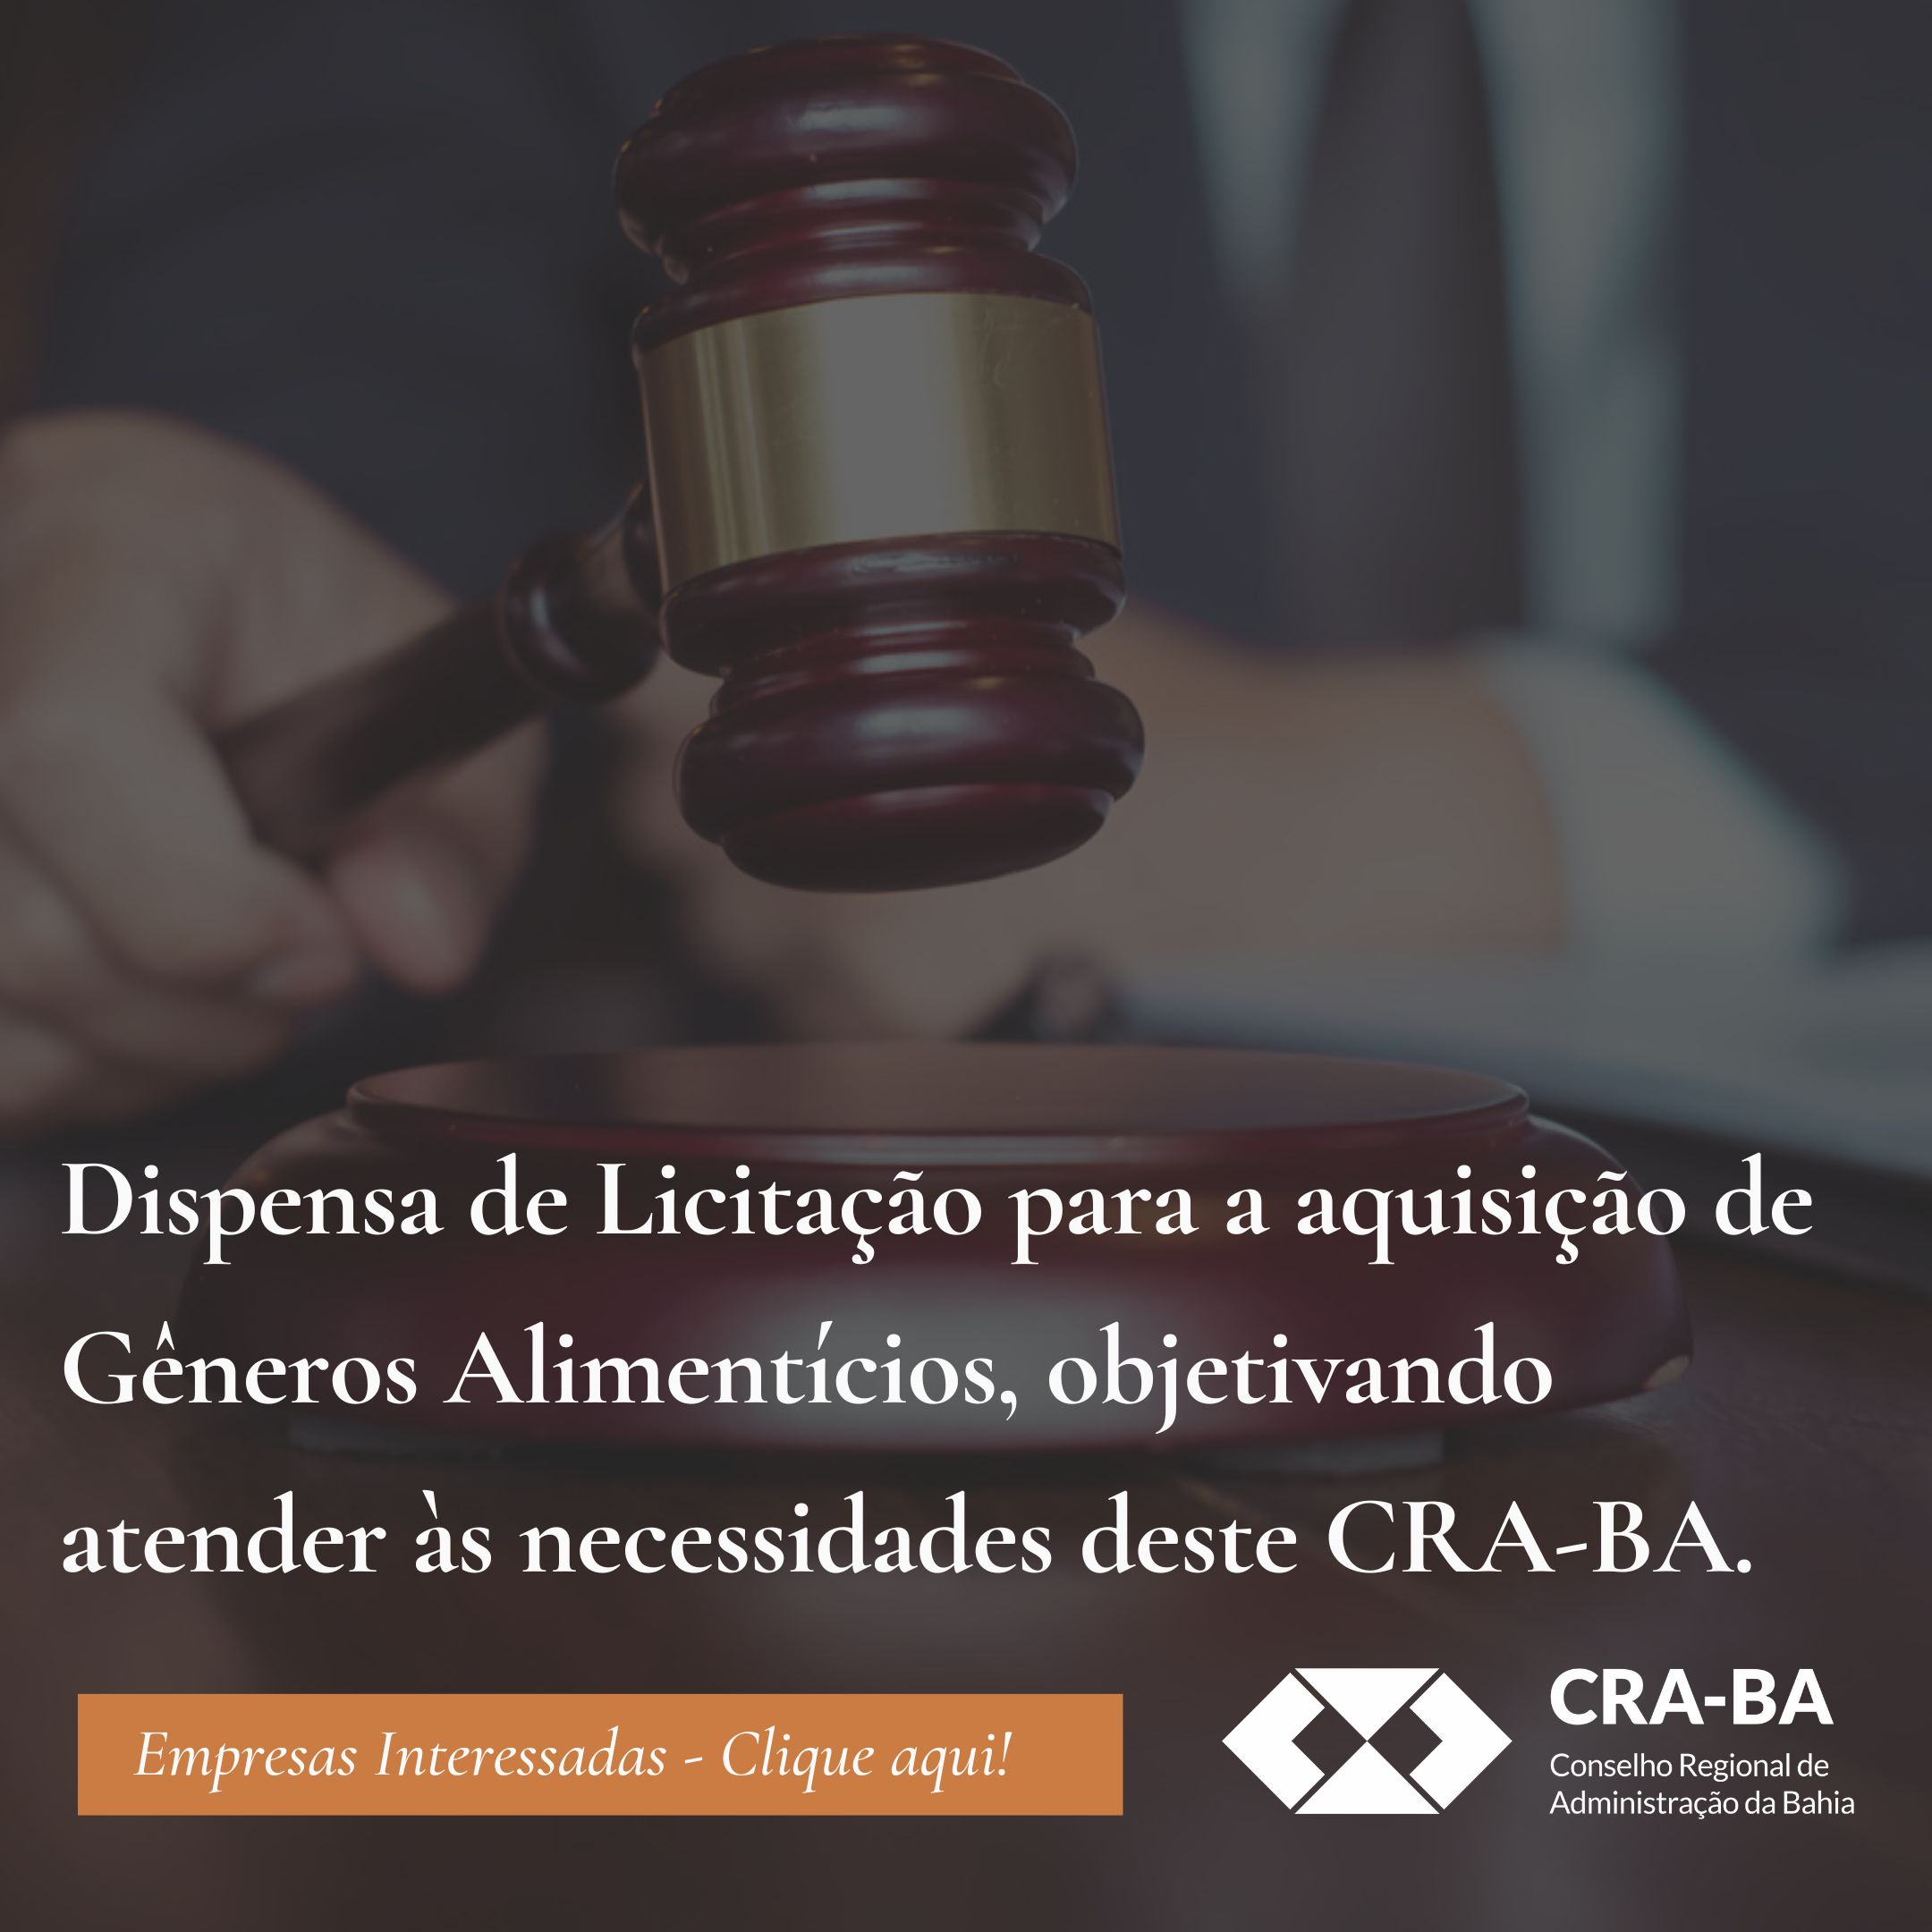 You are currently viewing Dispensa de Licitação para a aquisição de Gêneros Alimentícios, objetivando atender às necessidades deste CRA-BA.